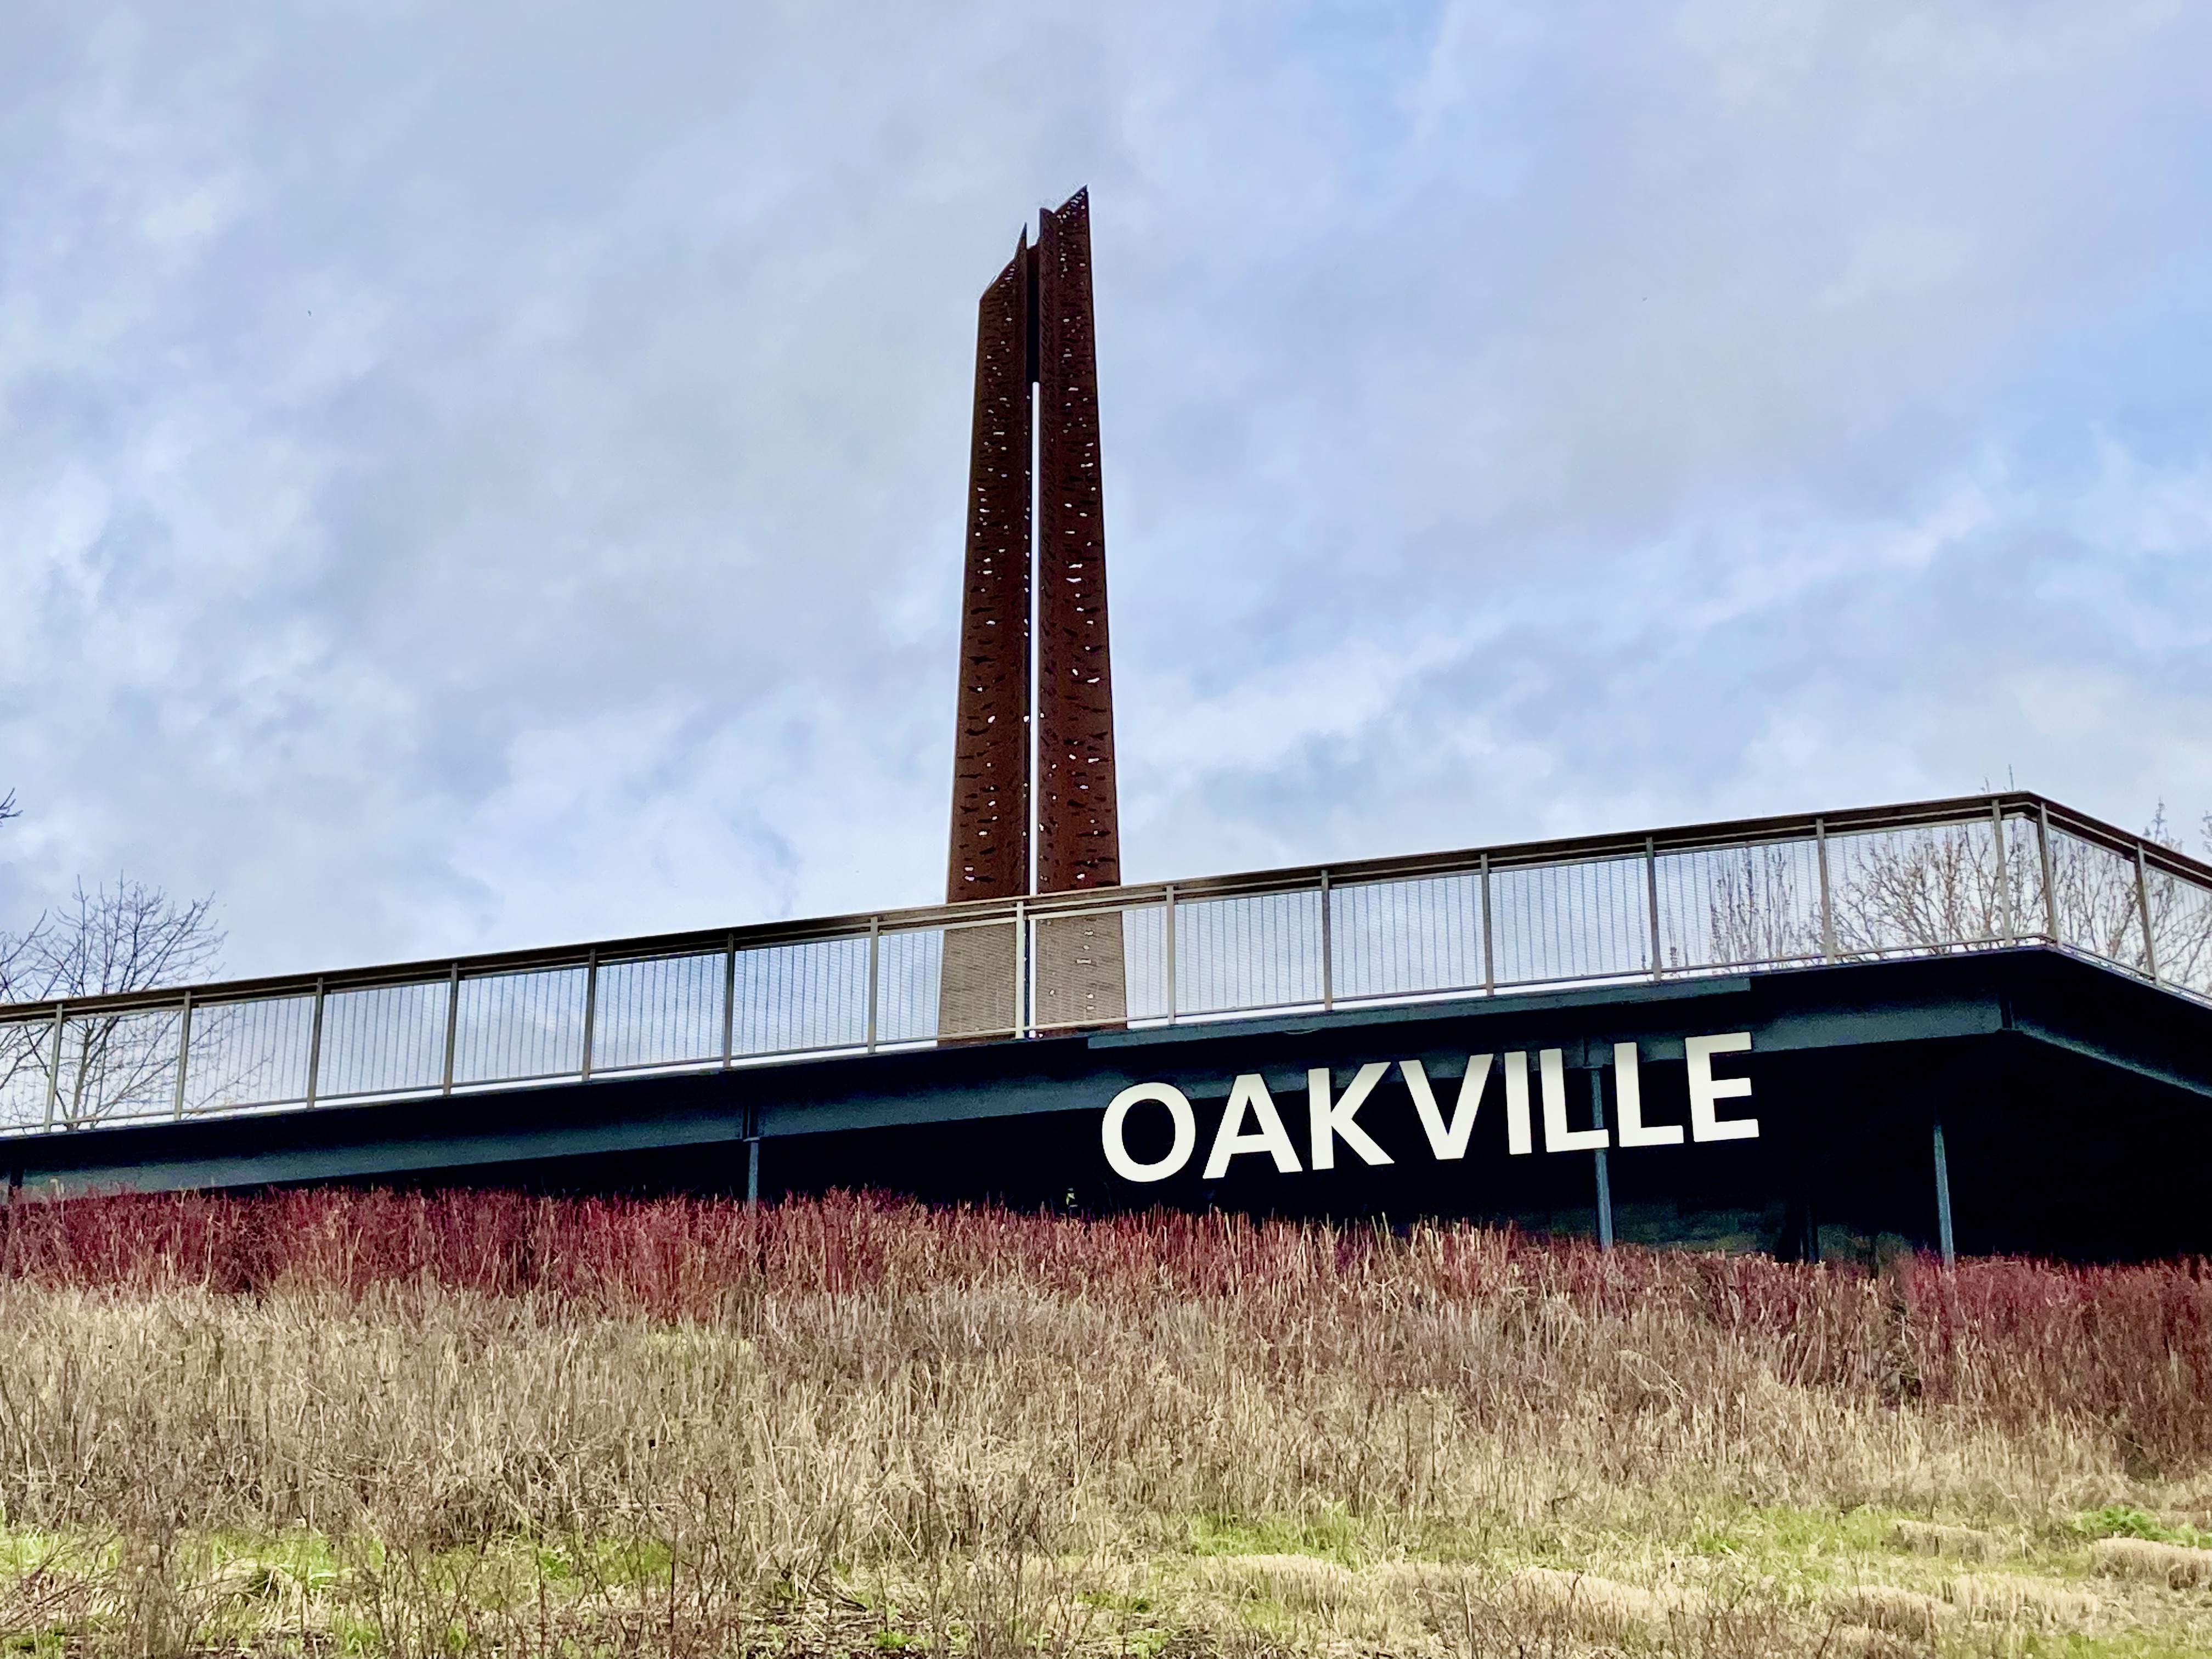 Oakville sign in Tannery Park | Oakville News N.M.